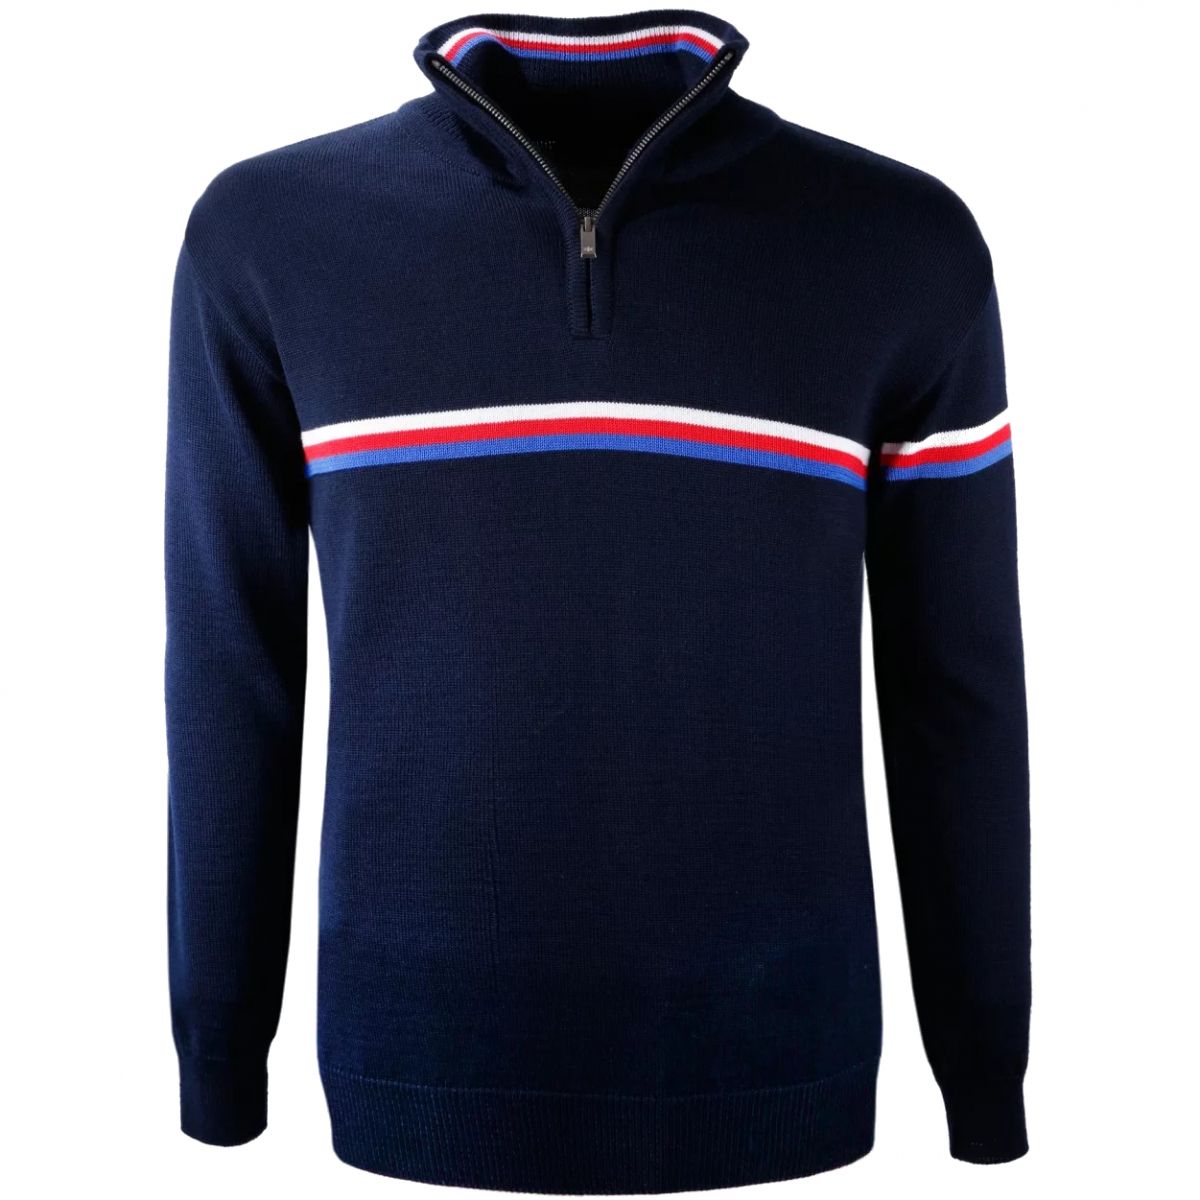 Brug Kama Loke Merino, sweater, herre, mørkeblå til en forbedret oplevelse